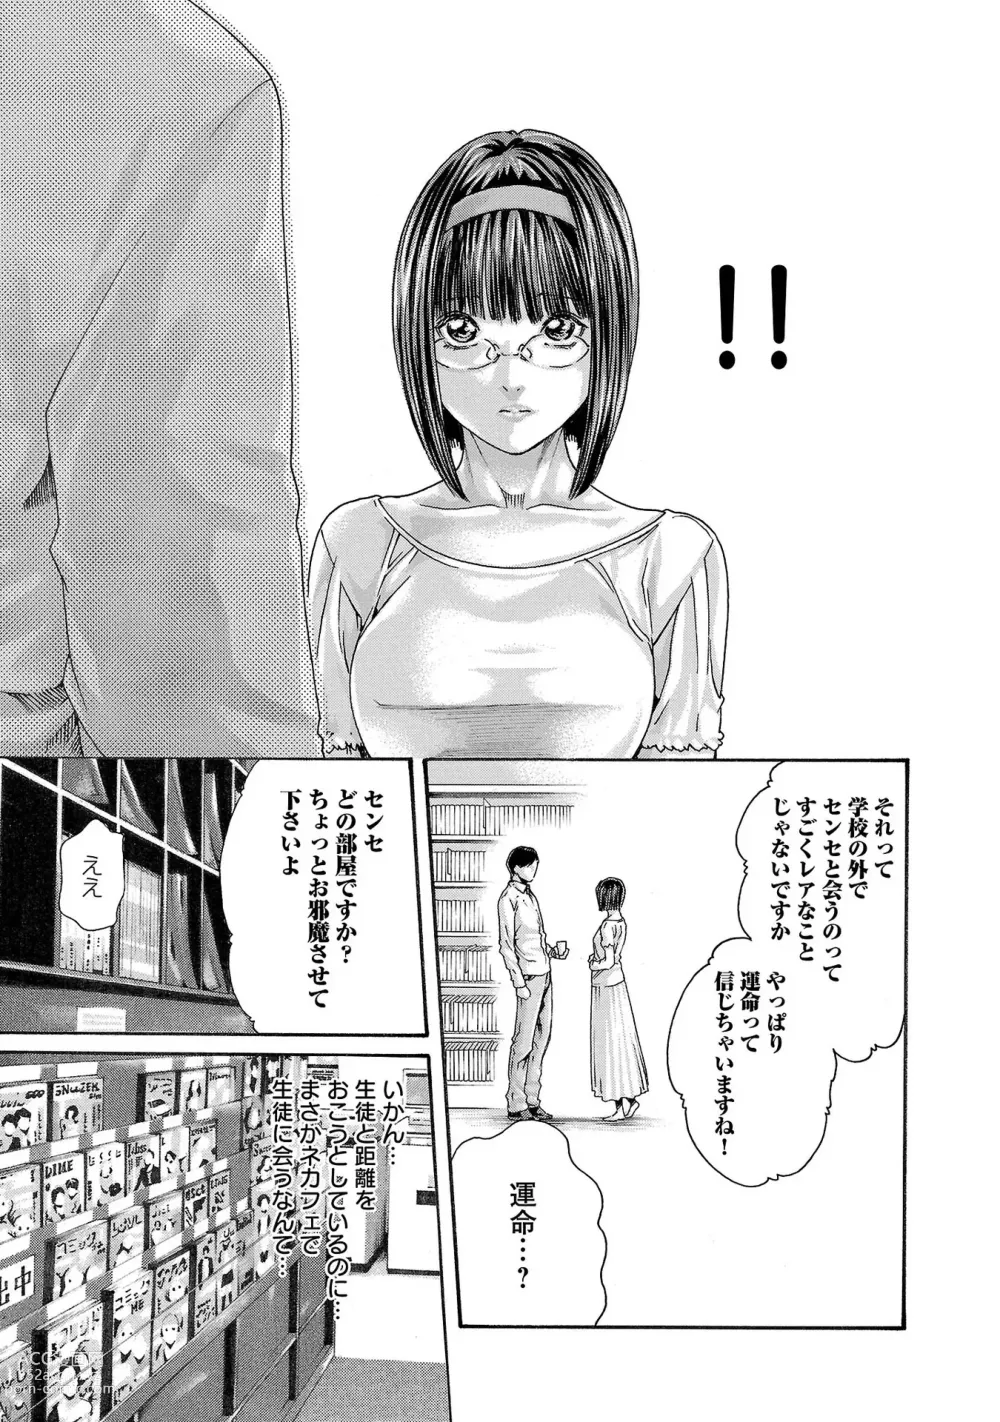 Page 16 of manga sense volume 13